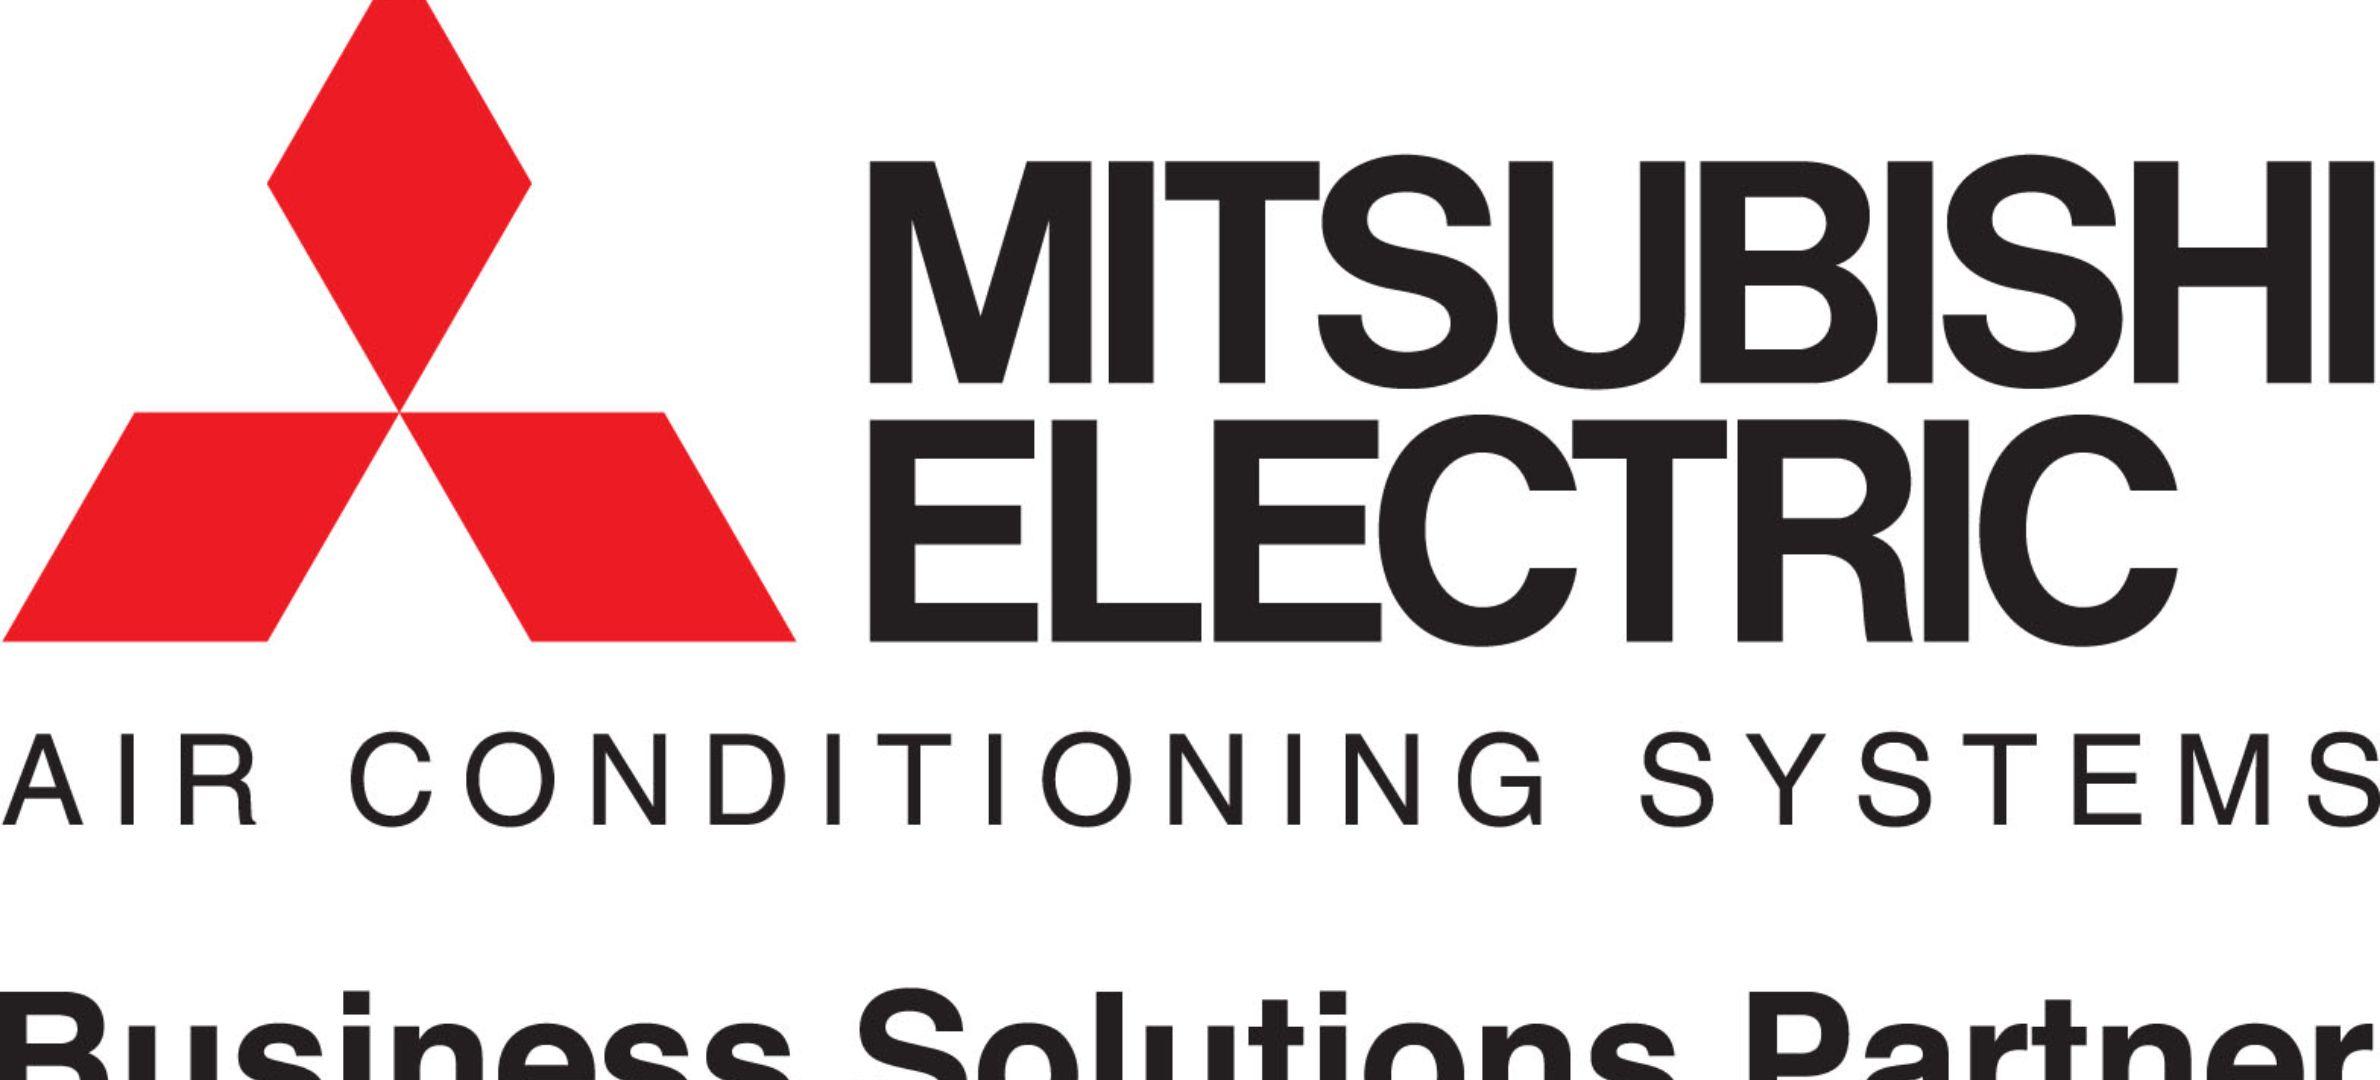 Mitsubishi Electric Logo - Mitsubishi electric logo